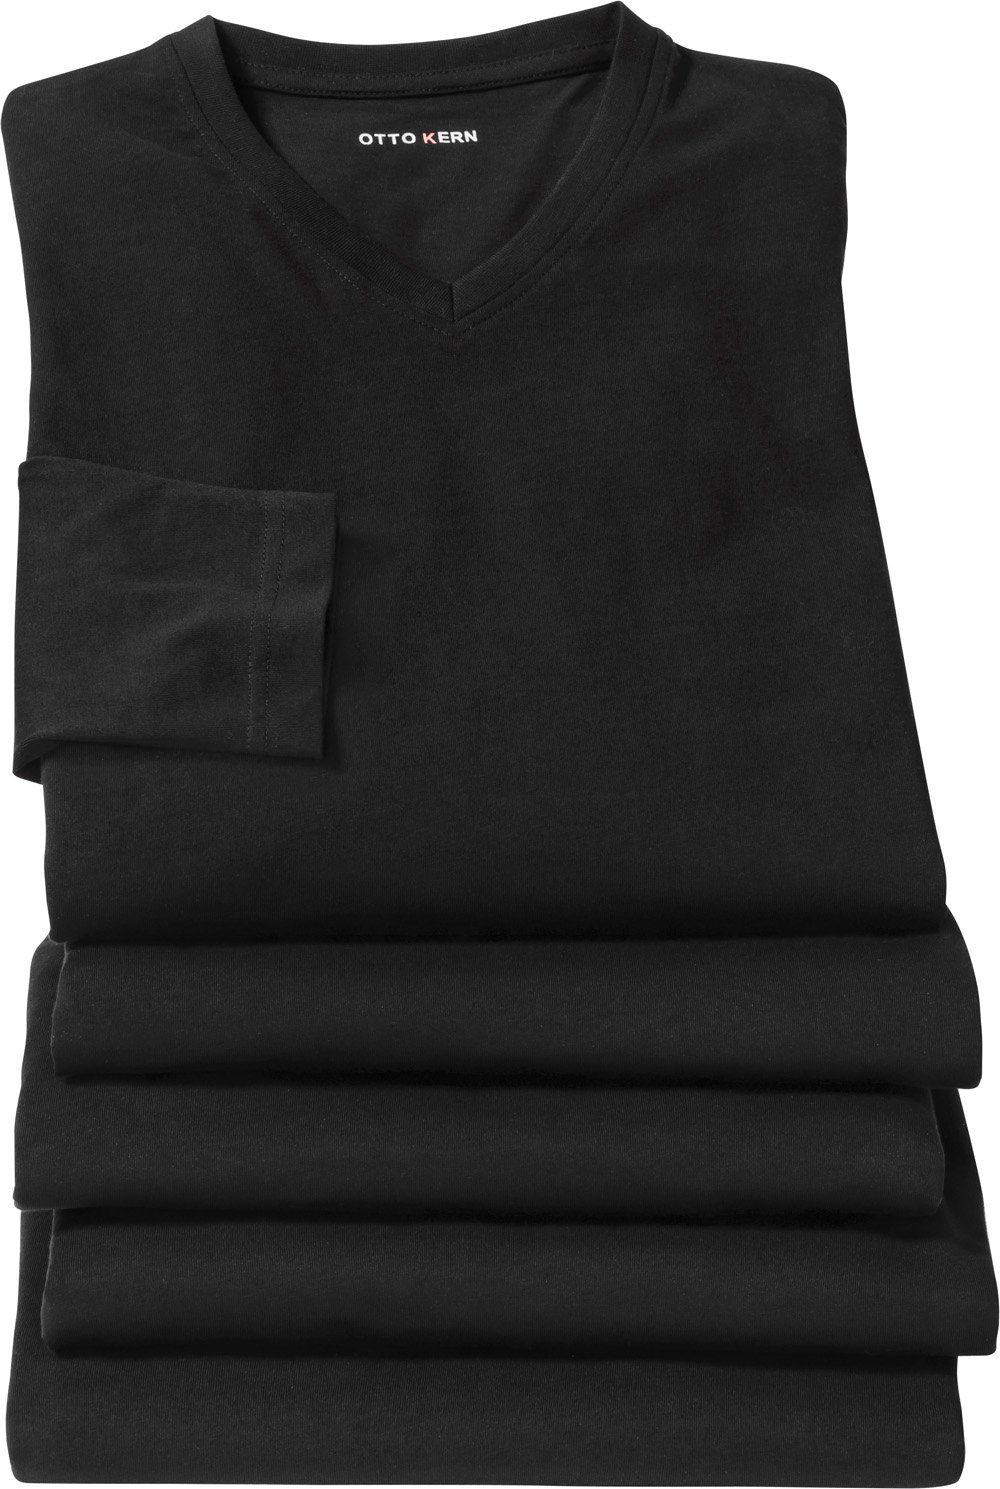 Otto Kern  Kern Langarmshirt (5er-Pack) aus 100% formstabiler und hautsympathischer Baumwolle schwarz